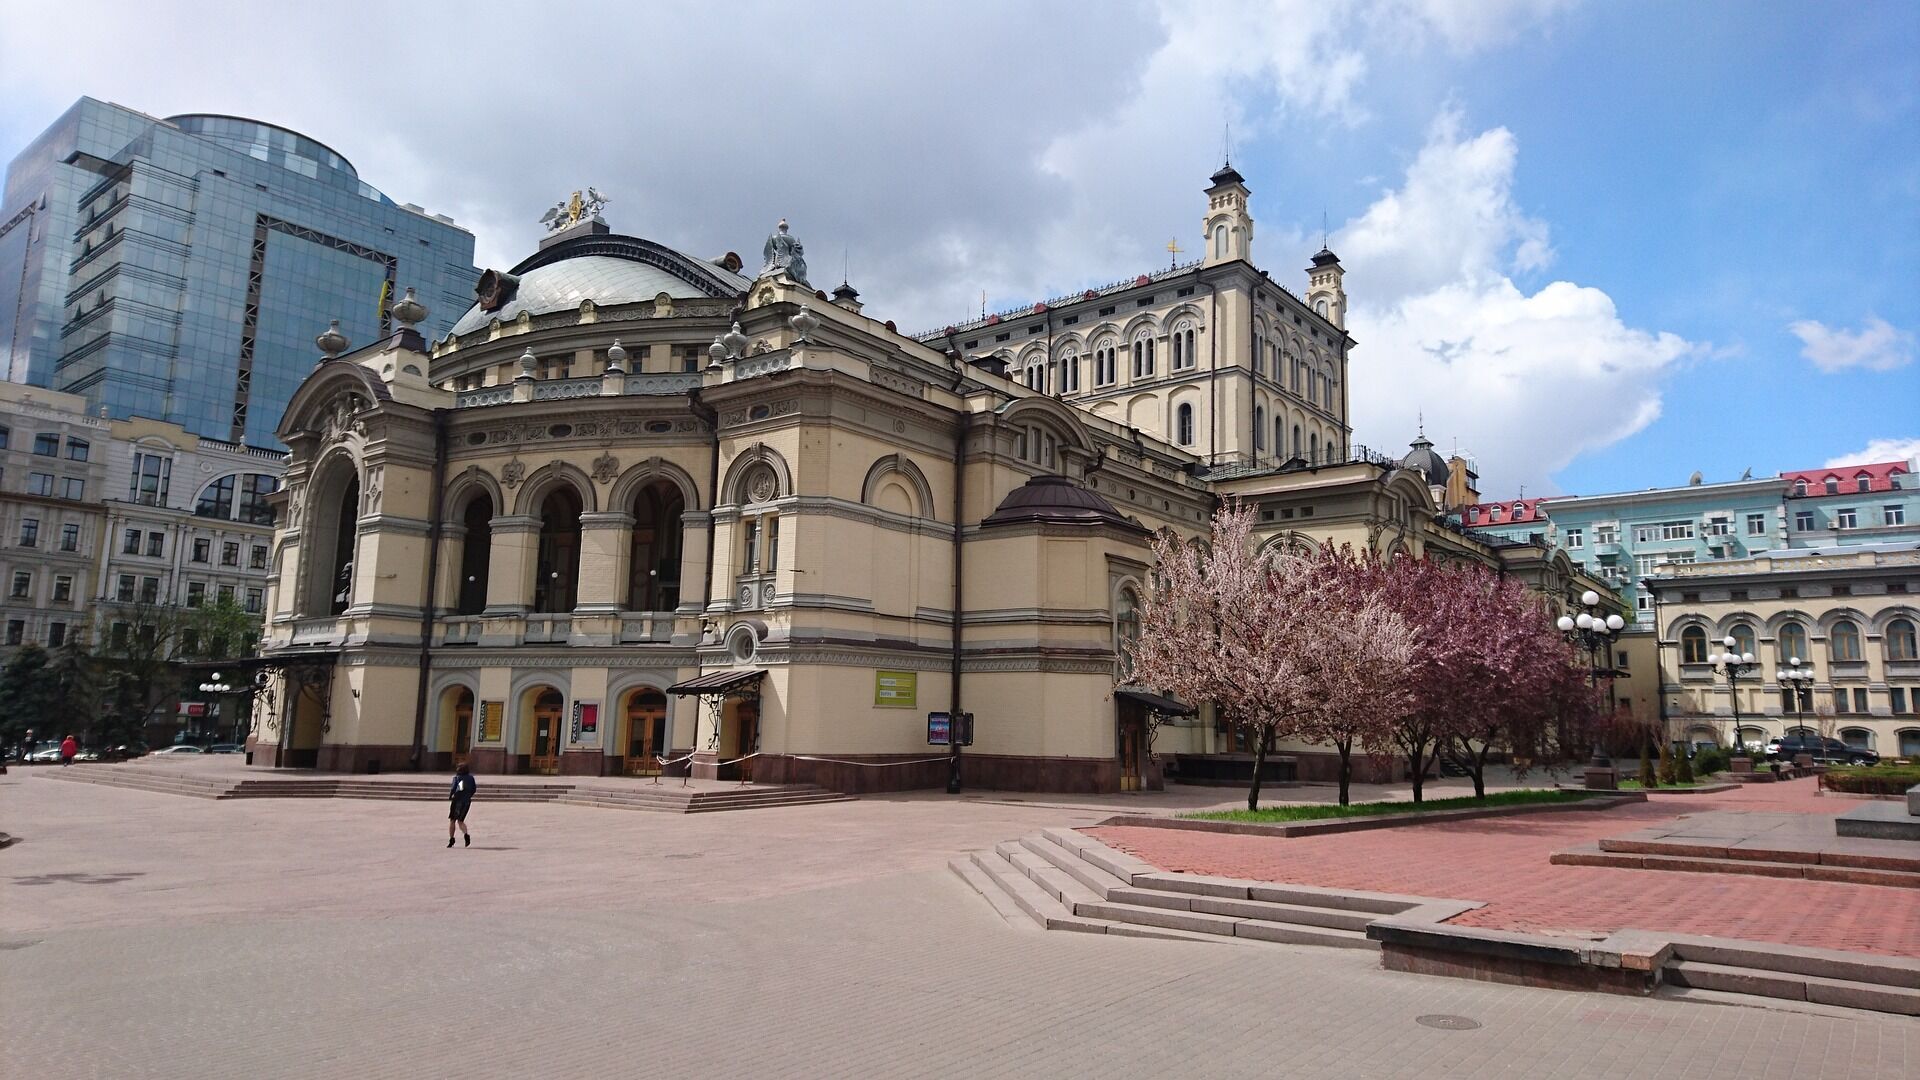 Національна опера непреривно працює в Києві вже кілька століть.